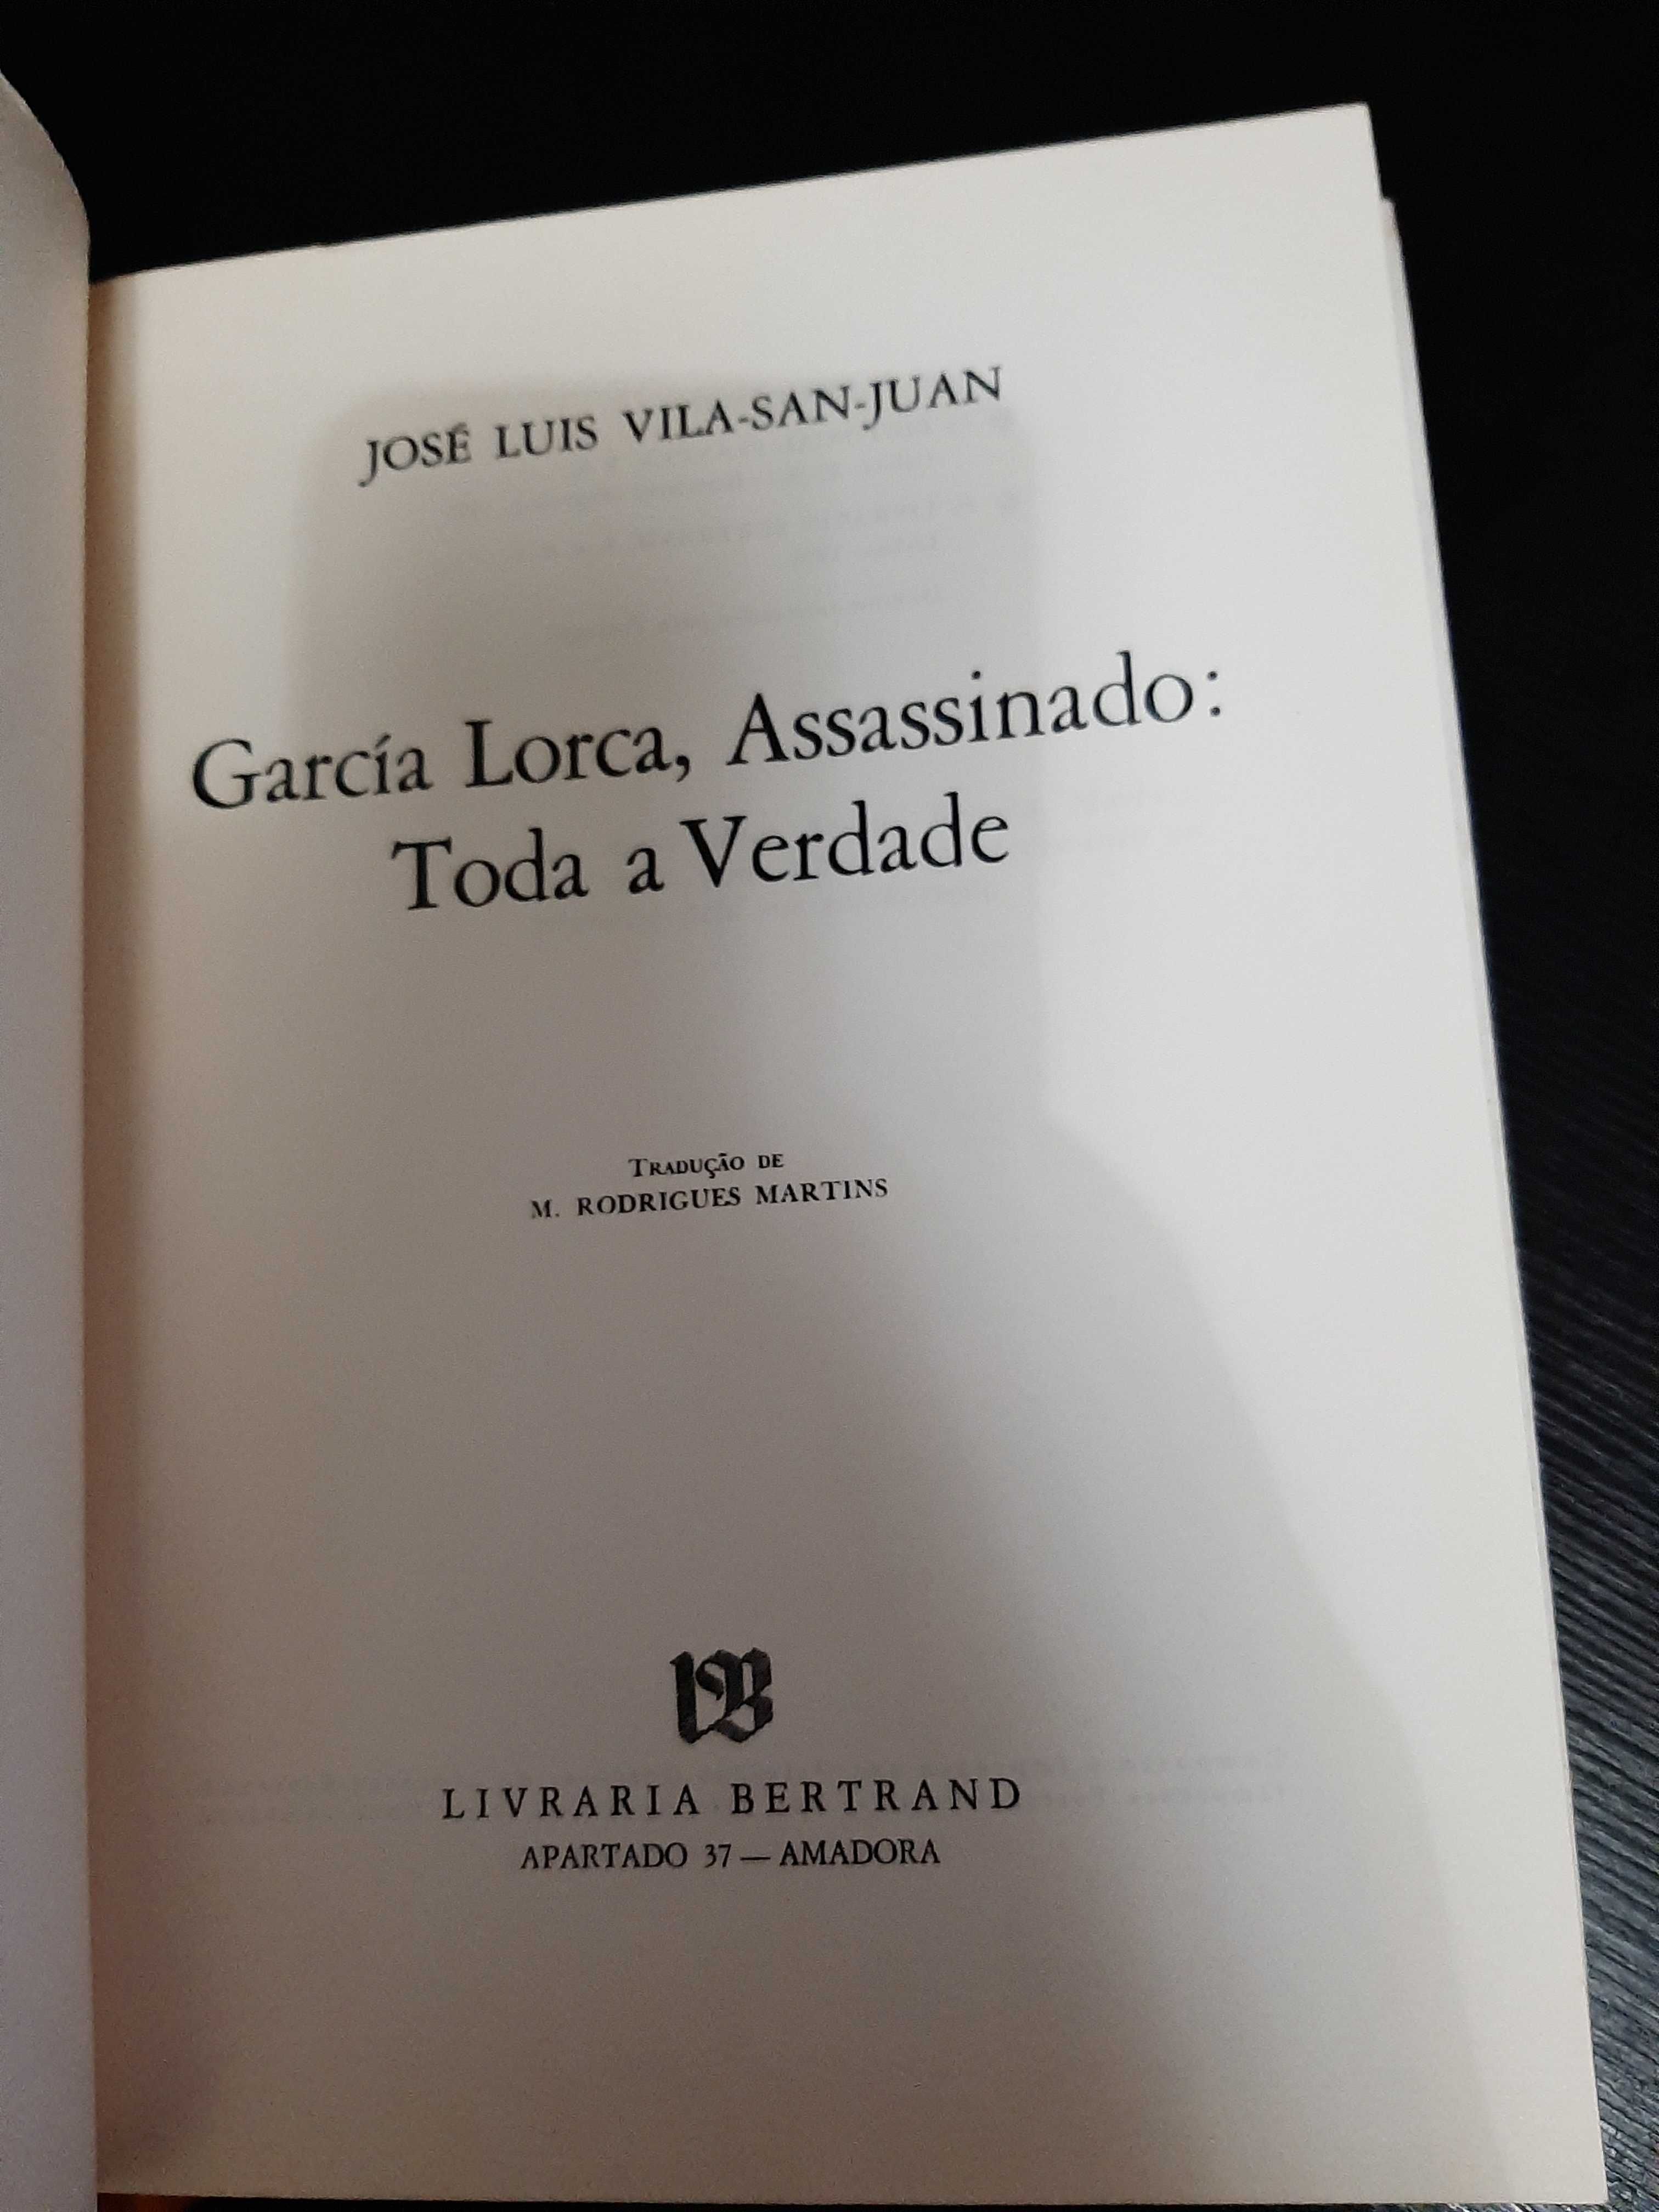 José Luís Vila-San-Juan – García Lorca, Assassinado: Toda a verdade